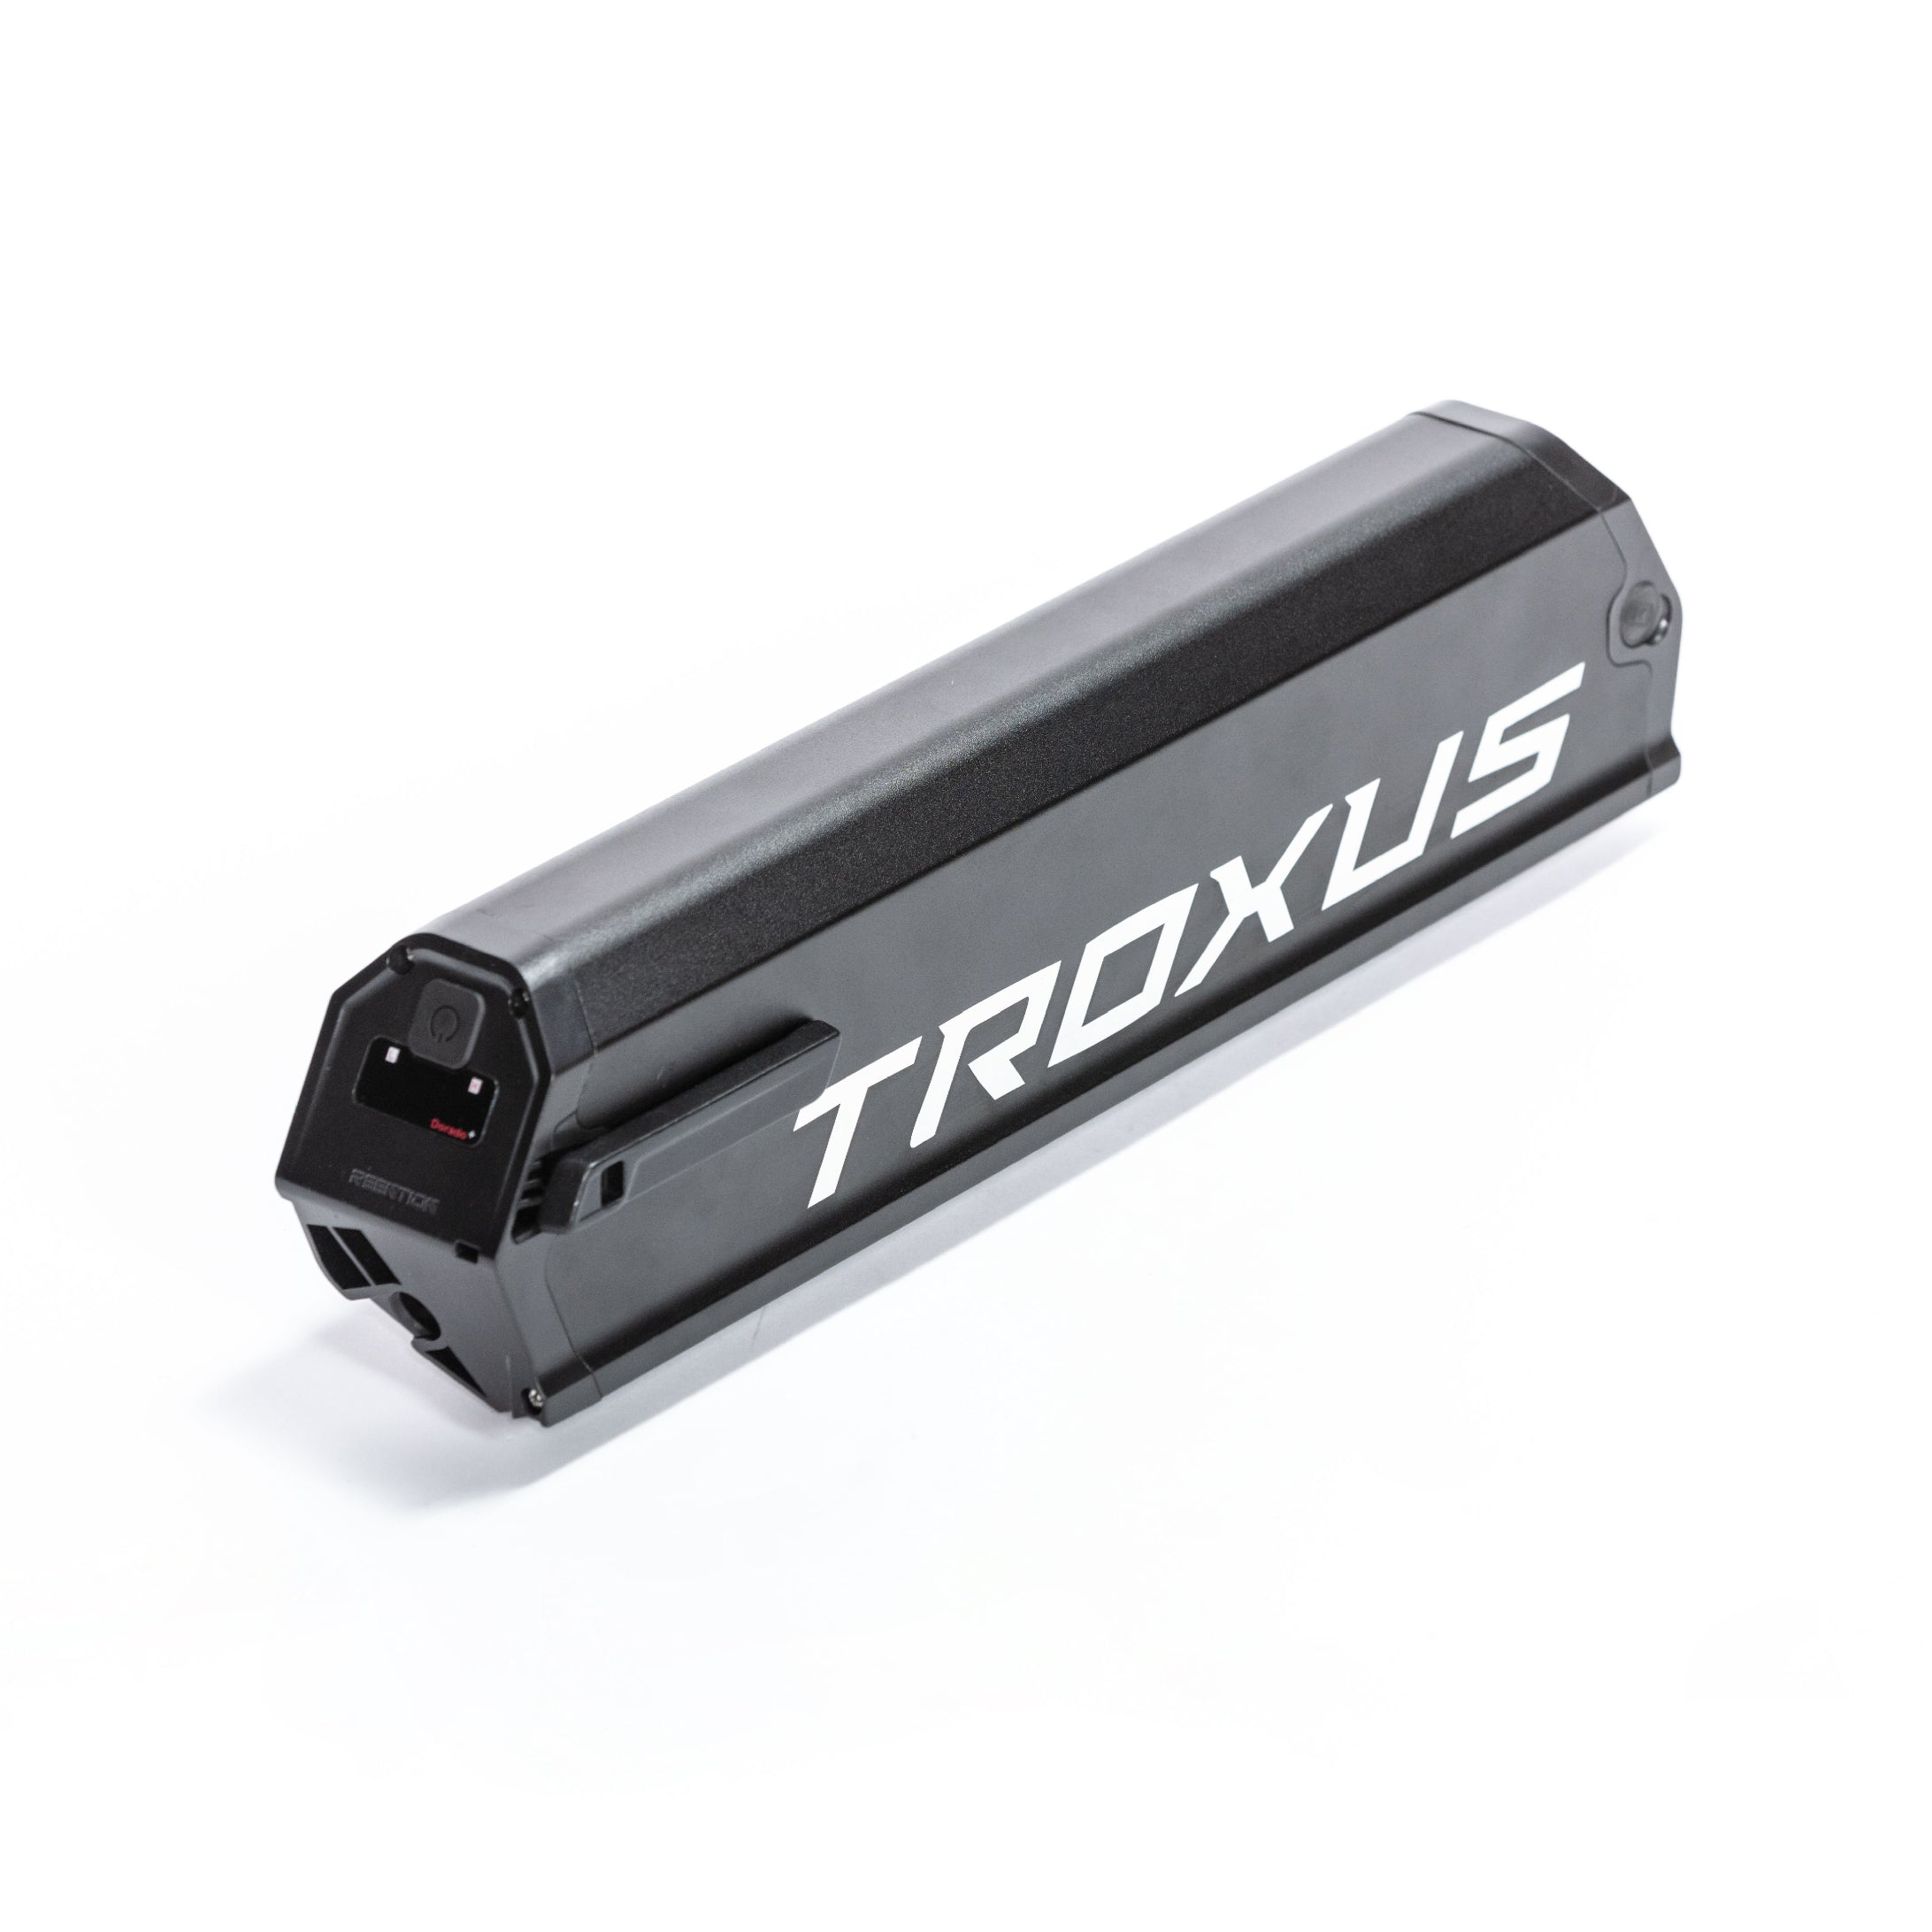 Troxus 2nd Gen E-bike Battery Pack